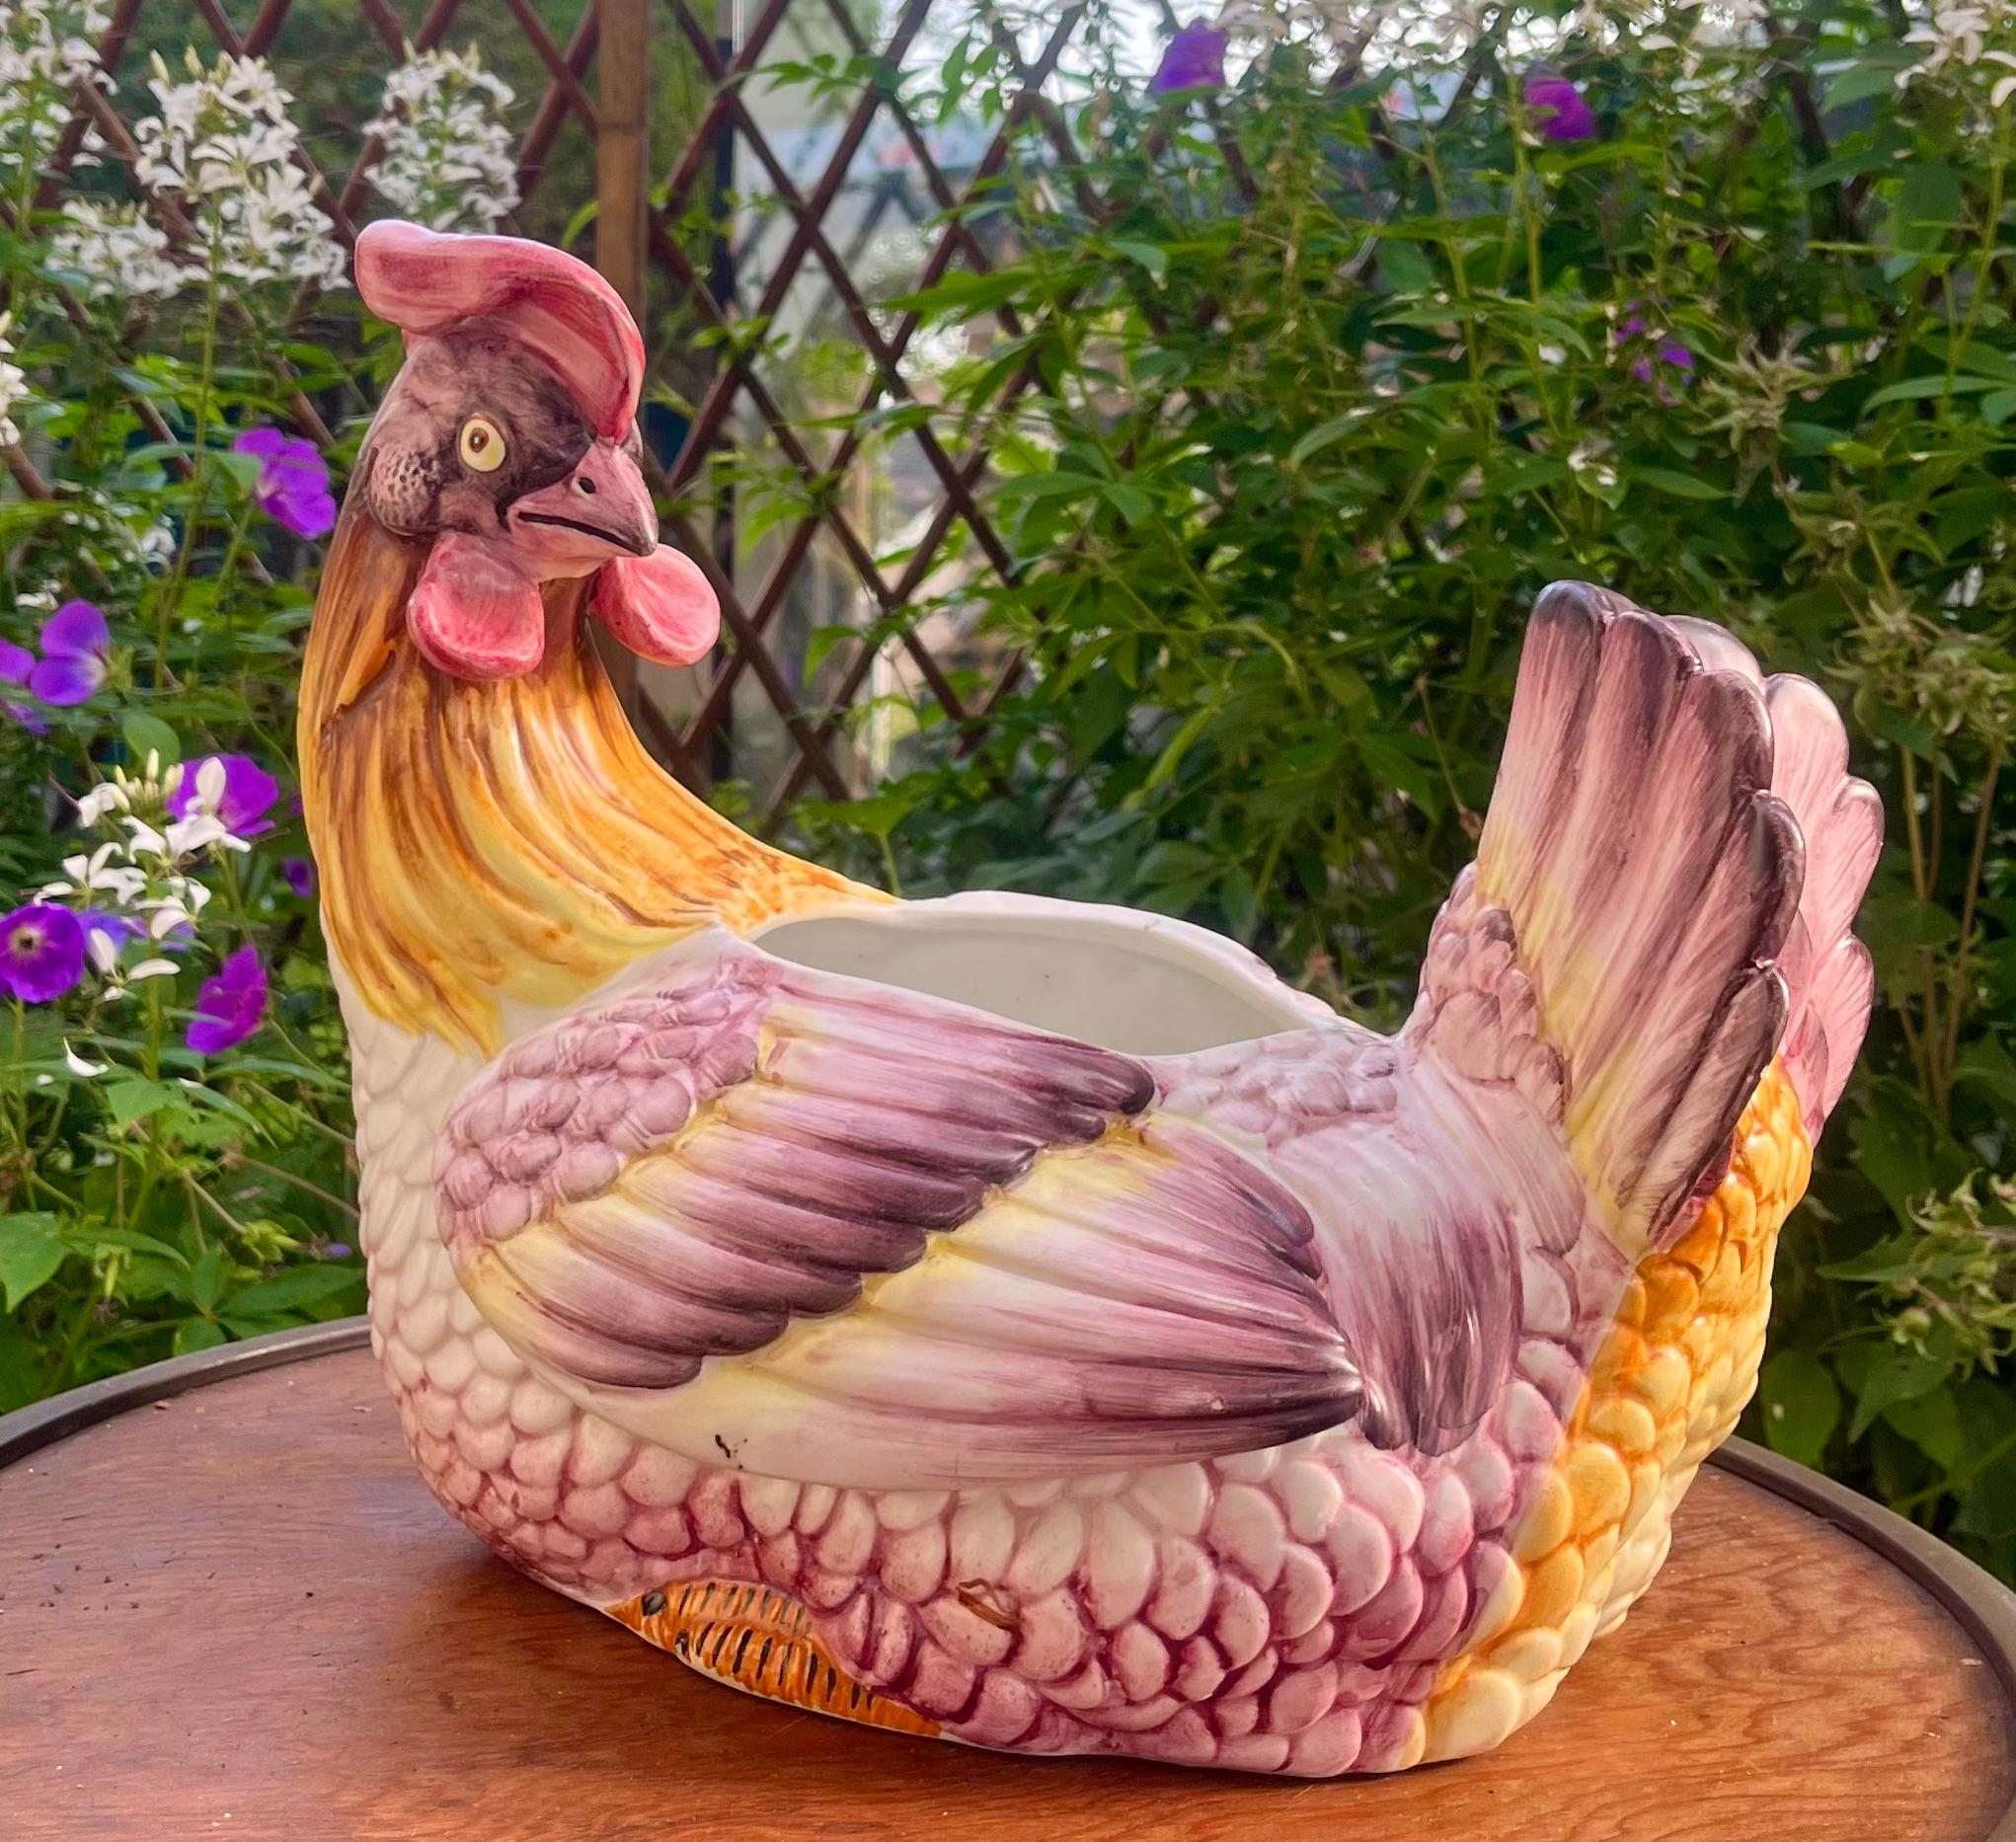 Jardinière de poulet en majolique Italie, vers 1960.

Estampillé : Italie
Un véritable trésor pour le collectionneur de céramiques.

Avec mes meilleurs vœux, Geert.

















































 